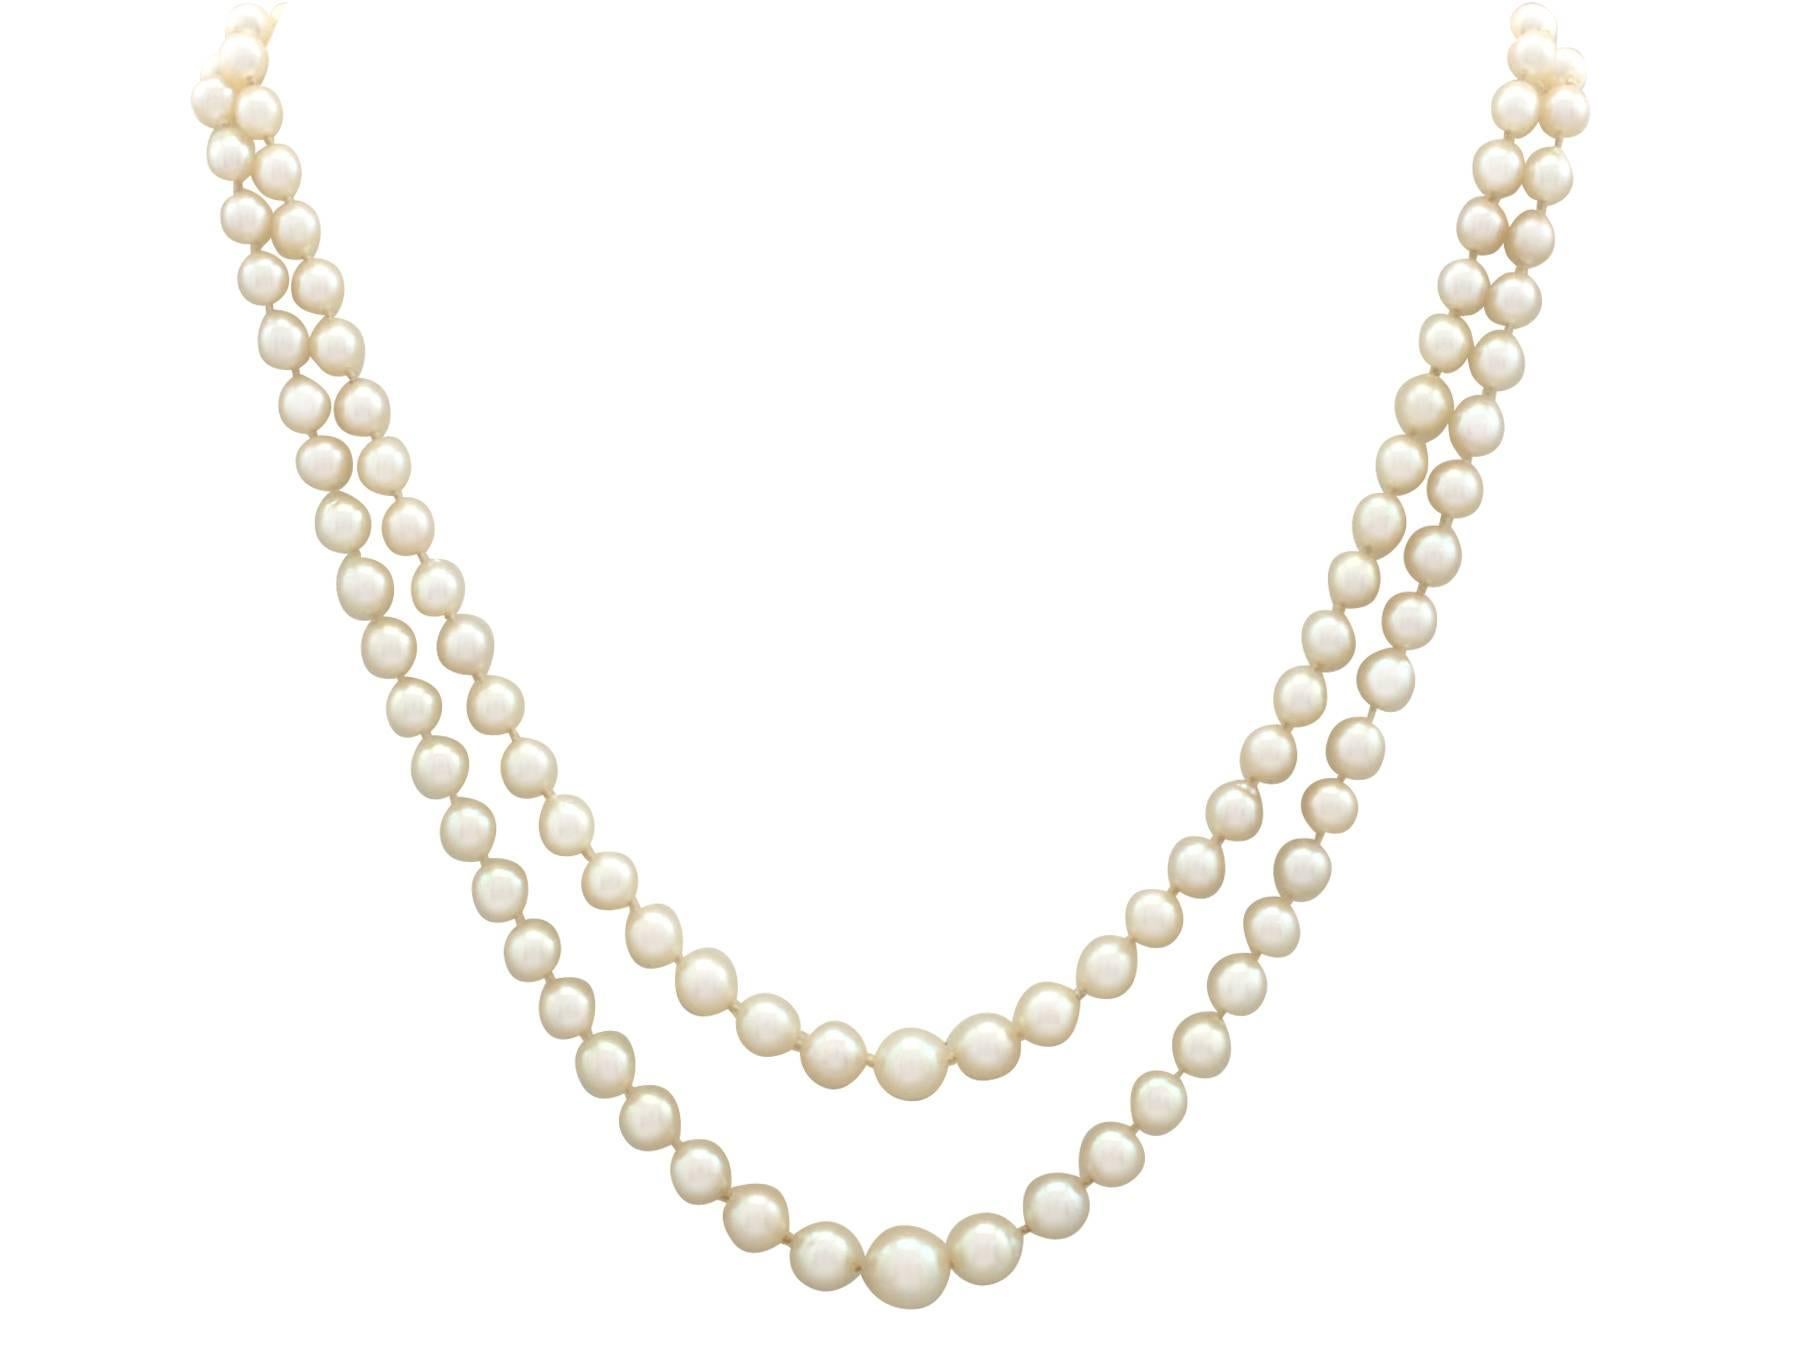 Un impressionnant collier de perles à double rang avec pierre d'imitation, diamant de 0,43 carat et fermoir en or blanc 18 carats, serti de platine ; faisant partie de nos diverses collections de bijoux en perles.

Ce magnifique collier de perles